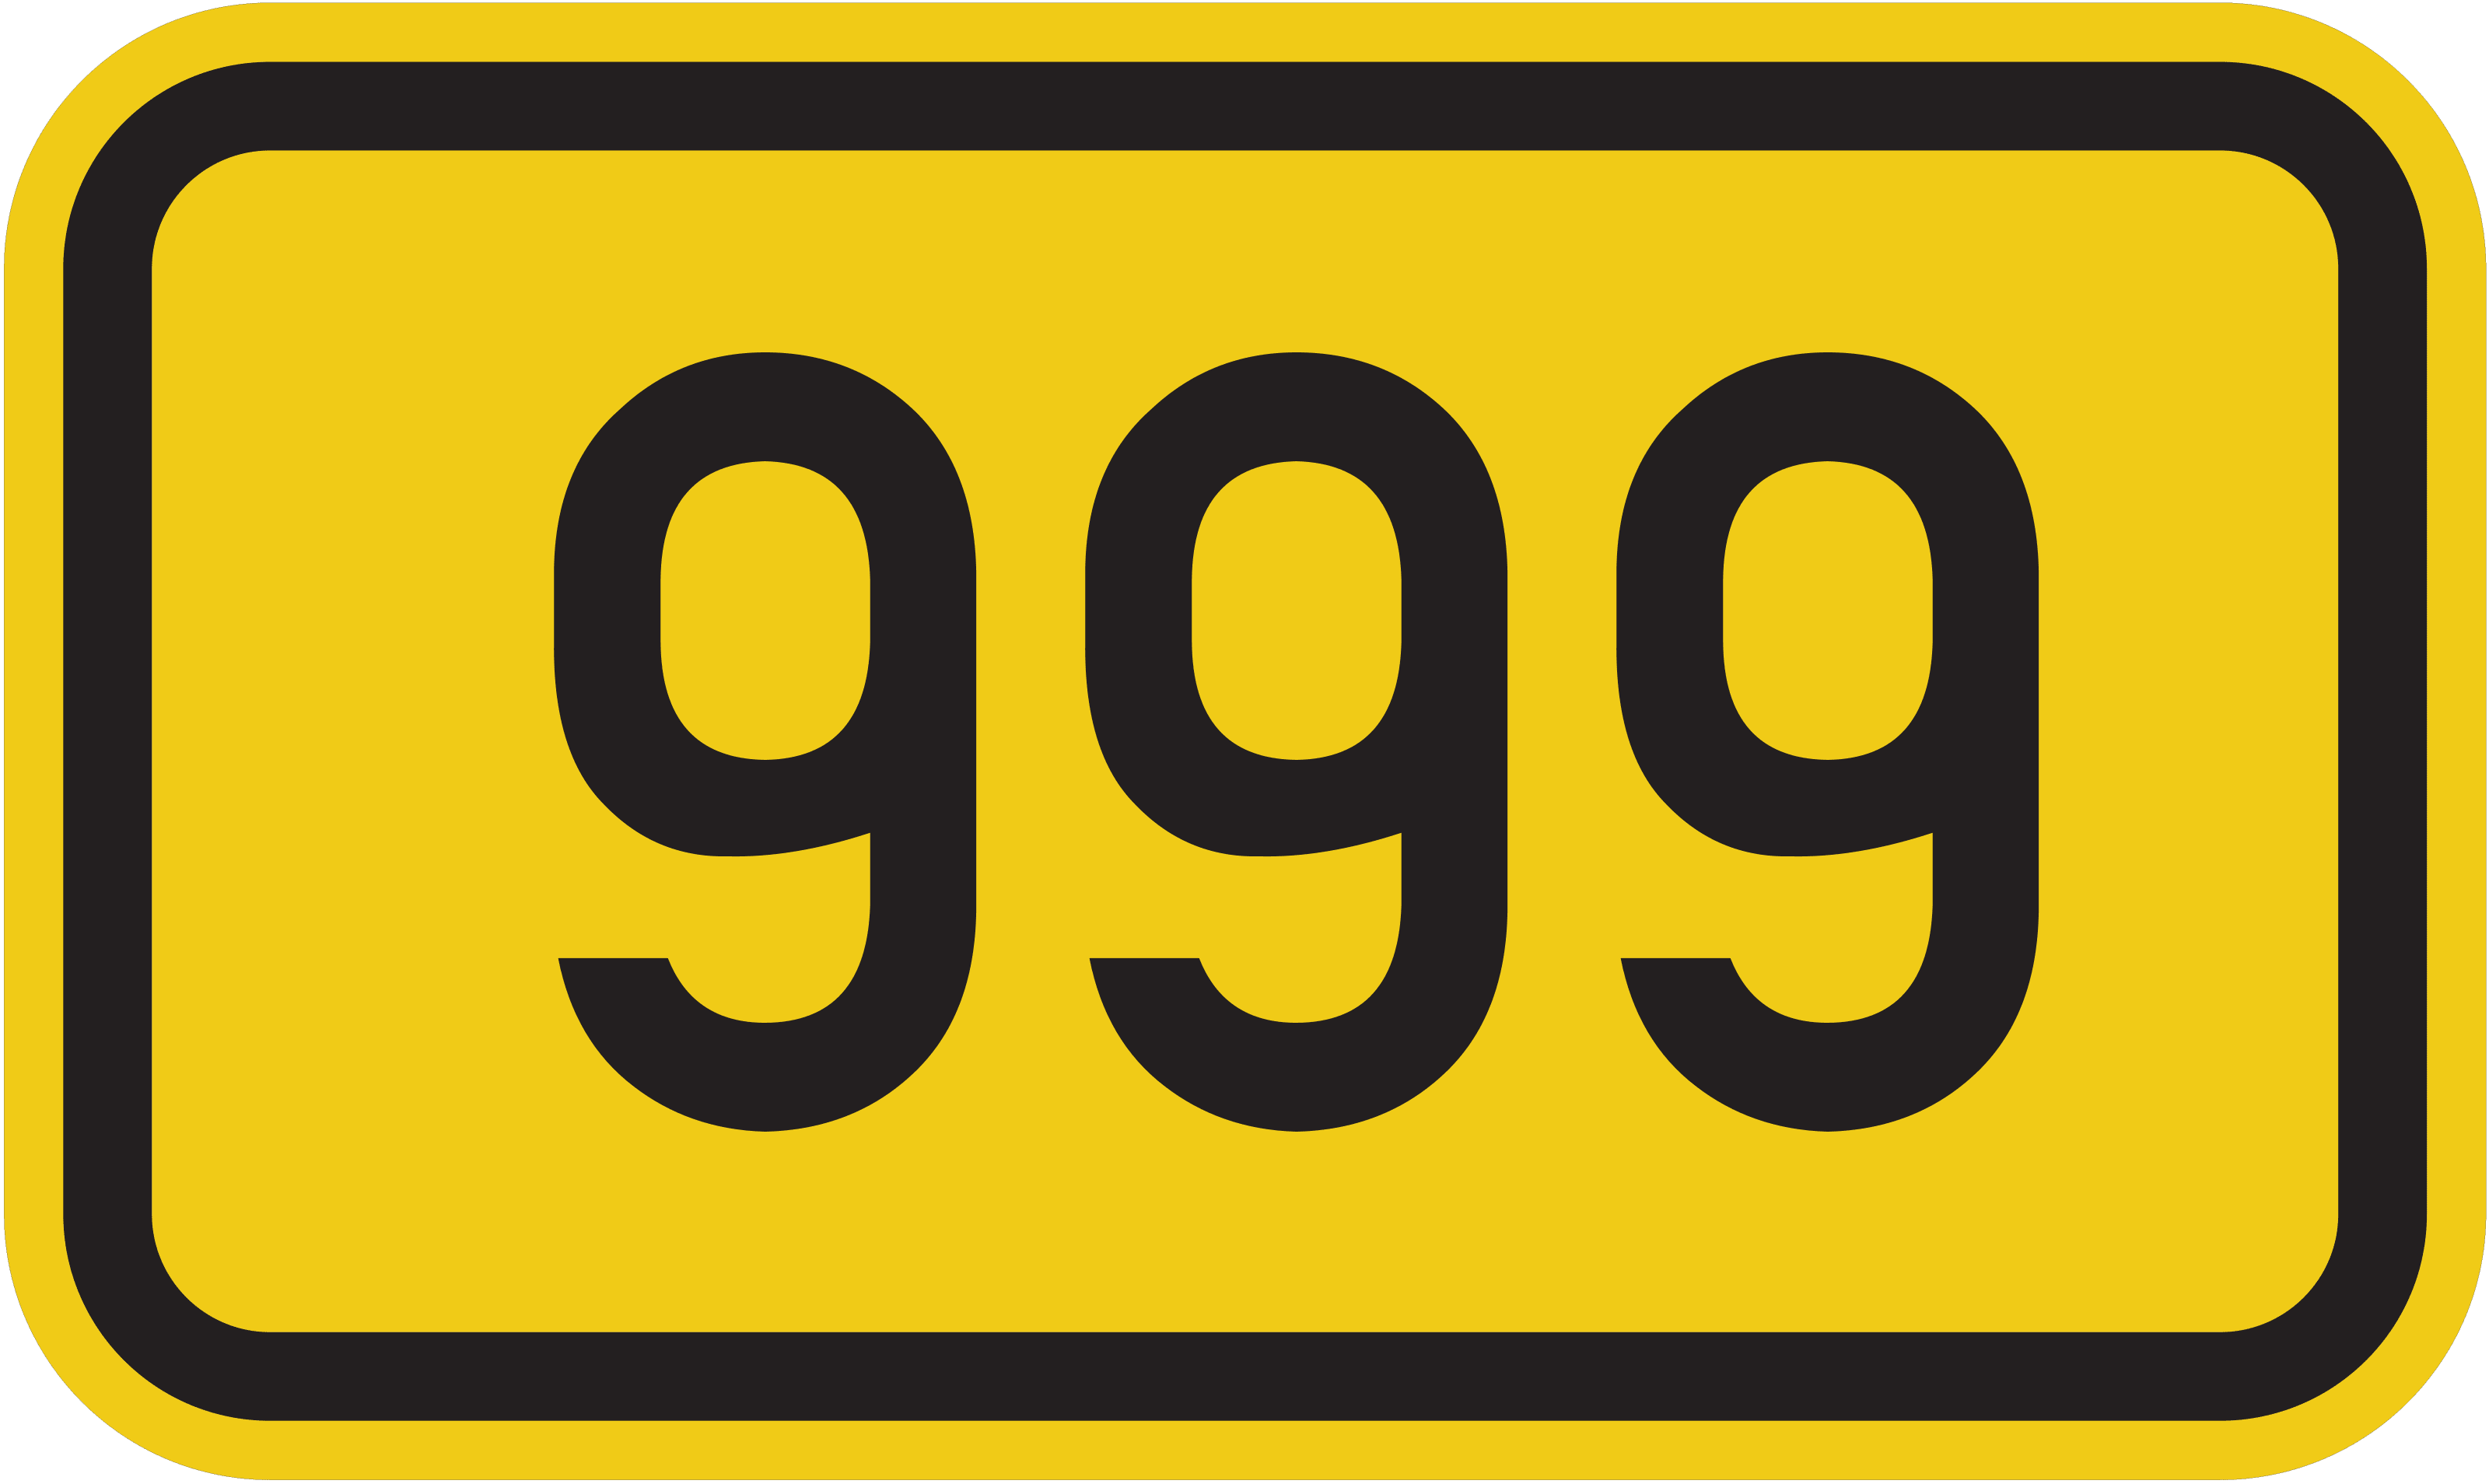 Bundesstraße B 999